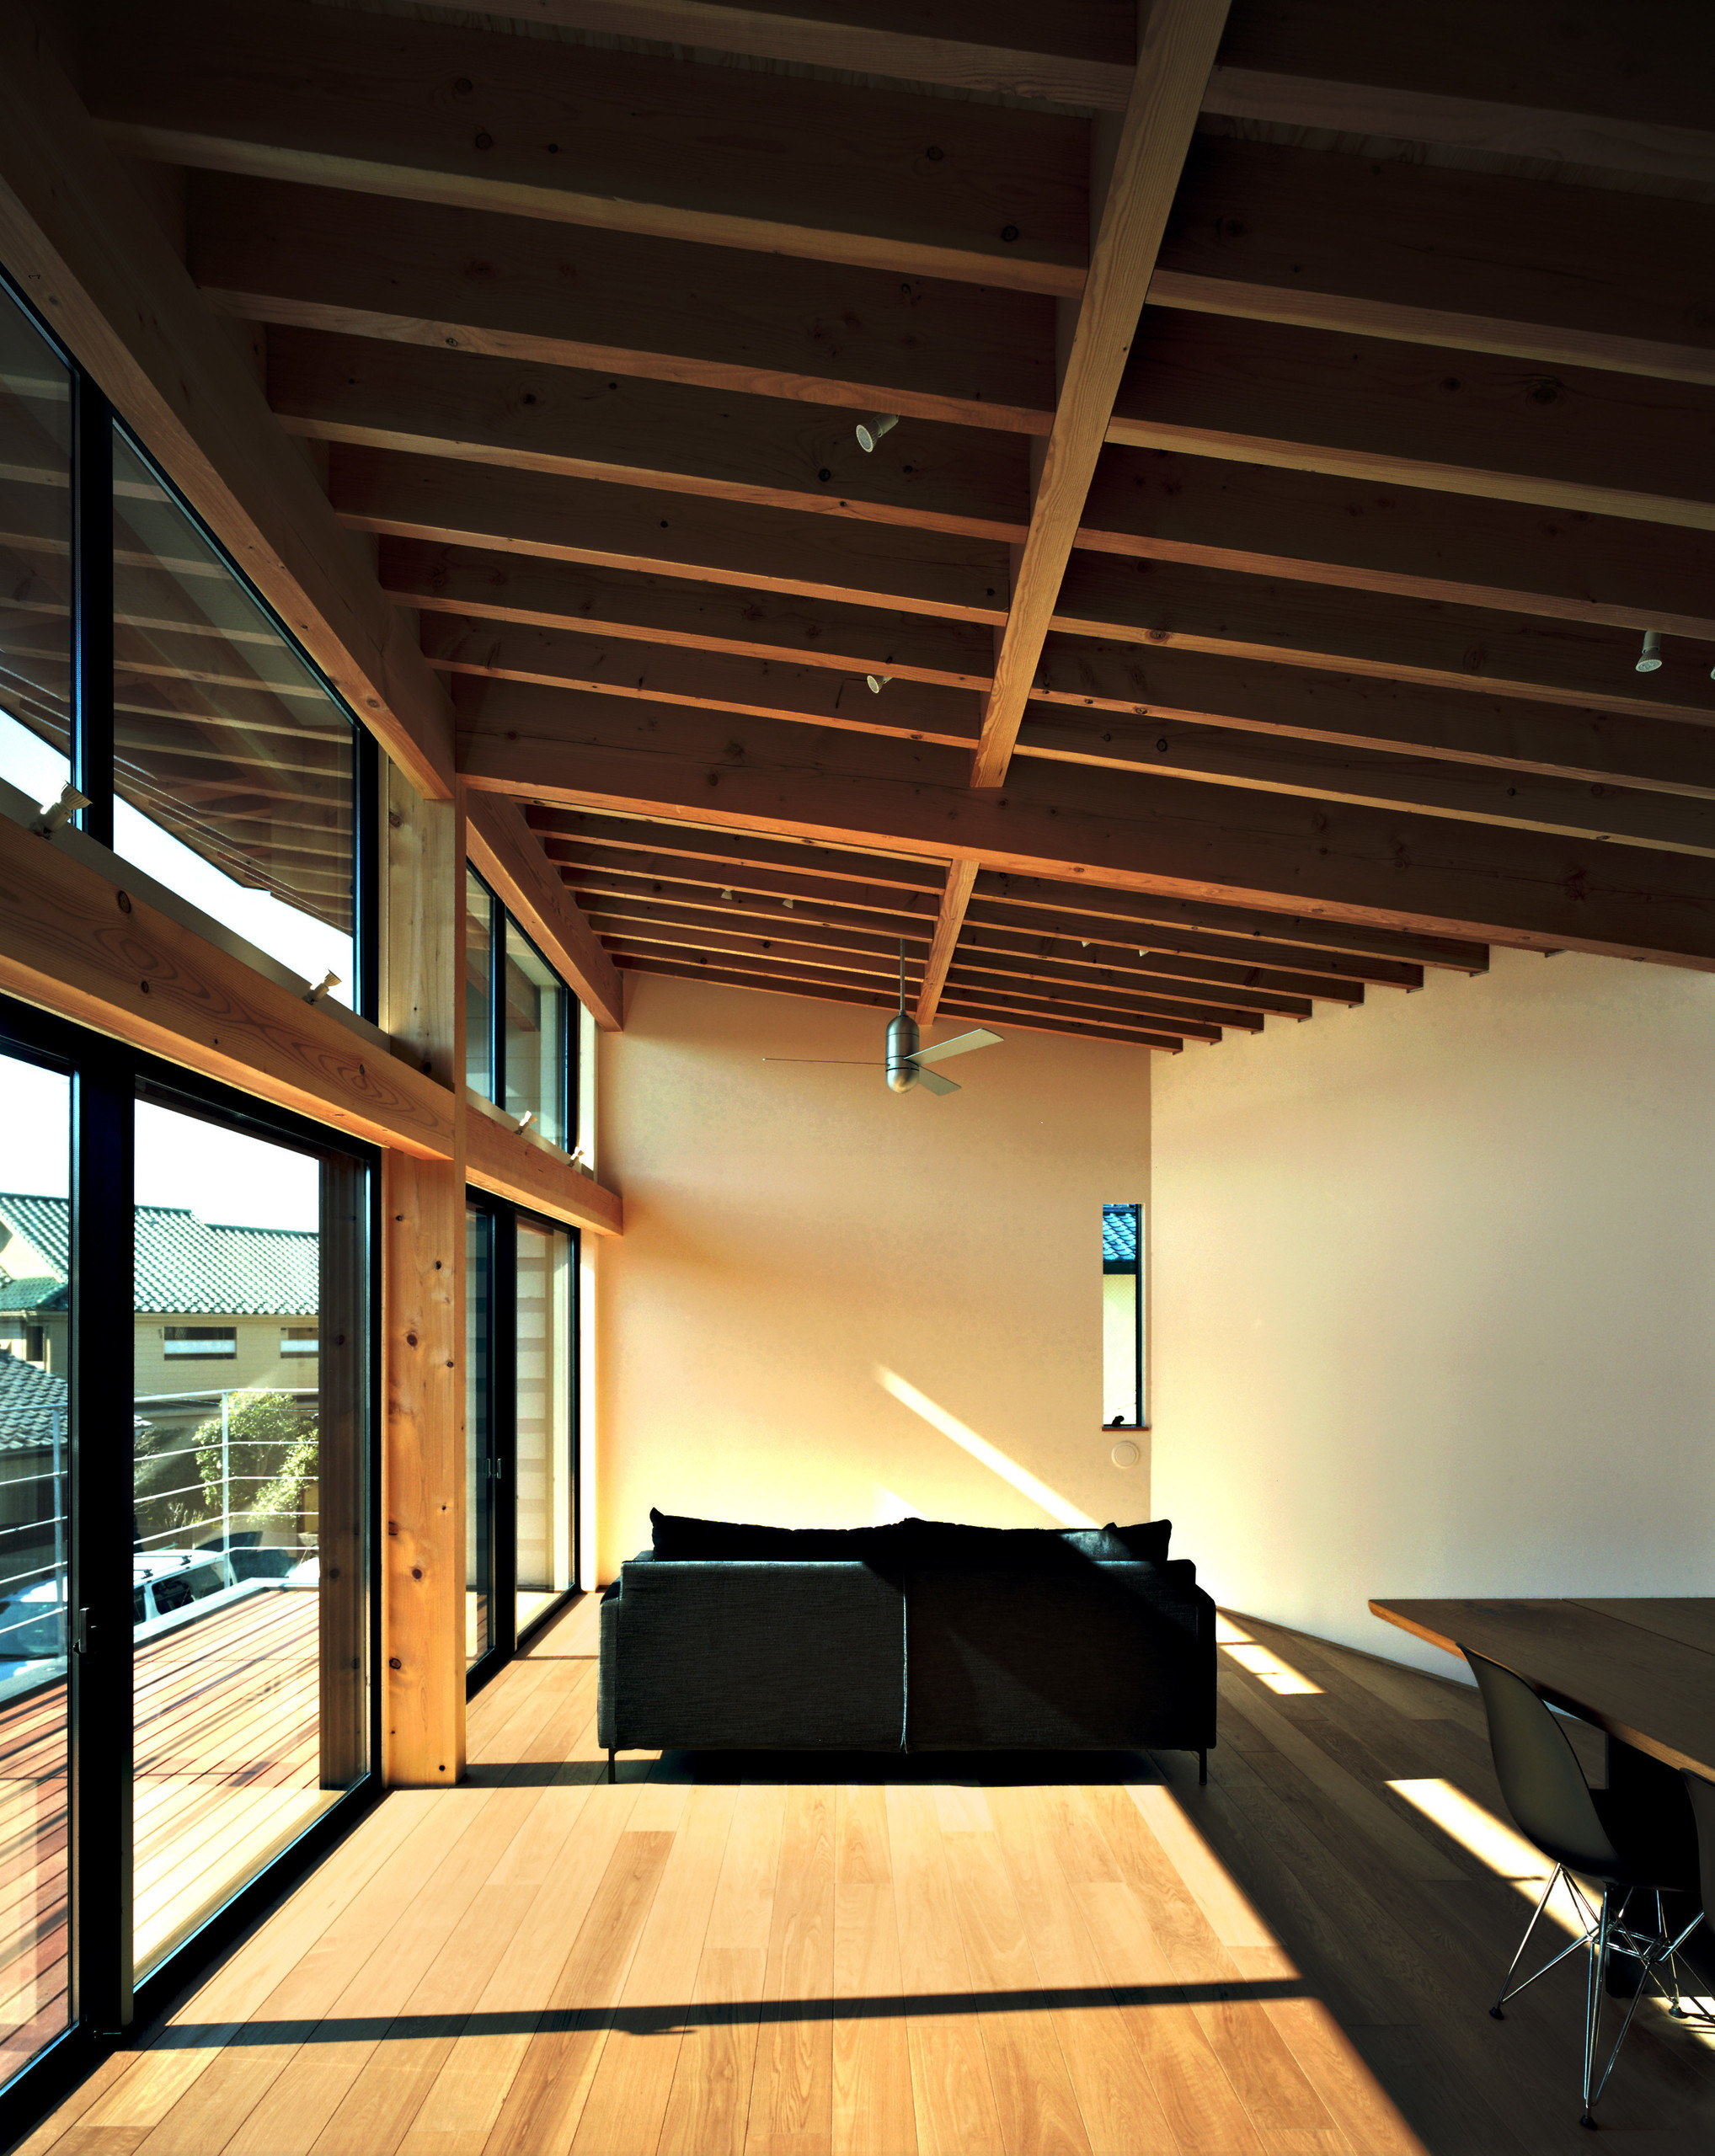 リビングダイニング化粧垂木をあらわしにした天井が特徴です。 | Trilogy - 北の家